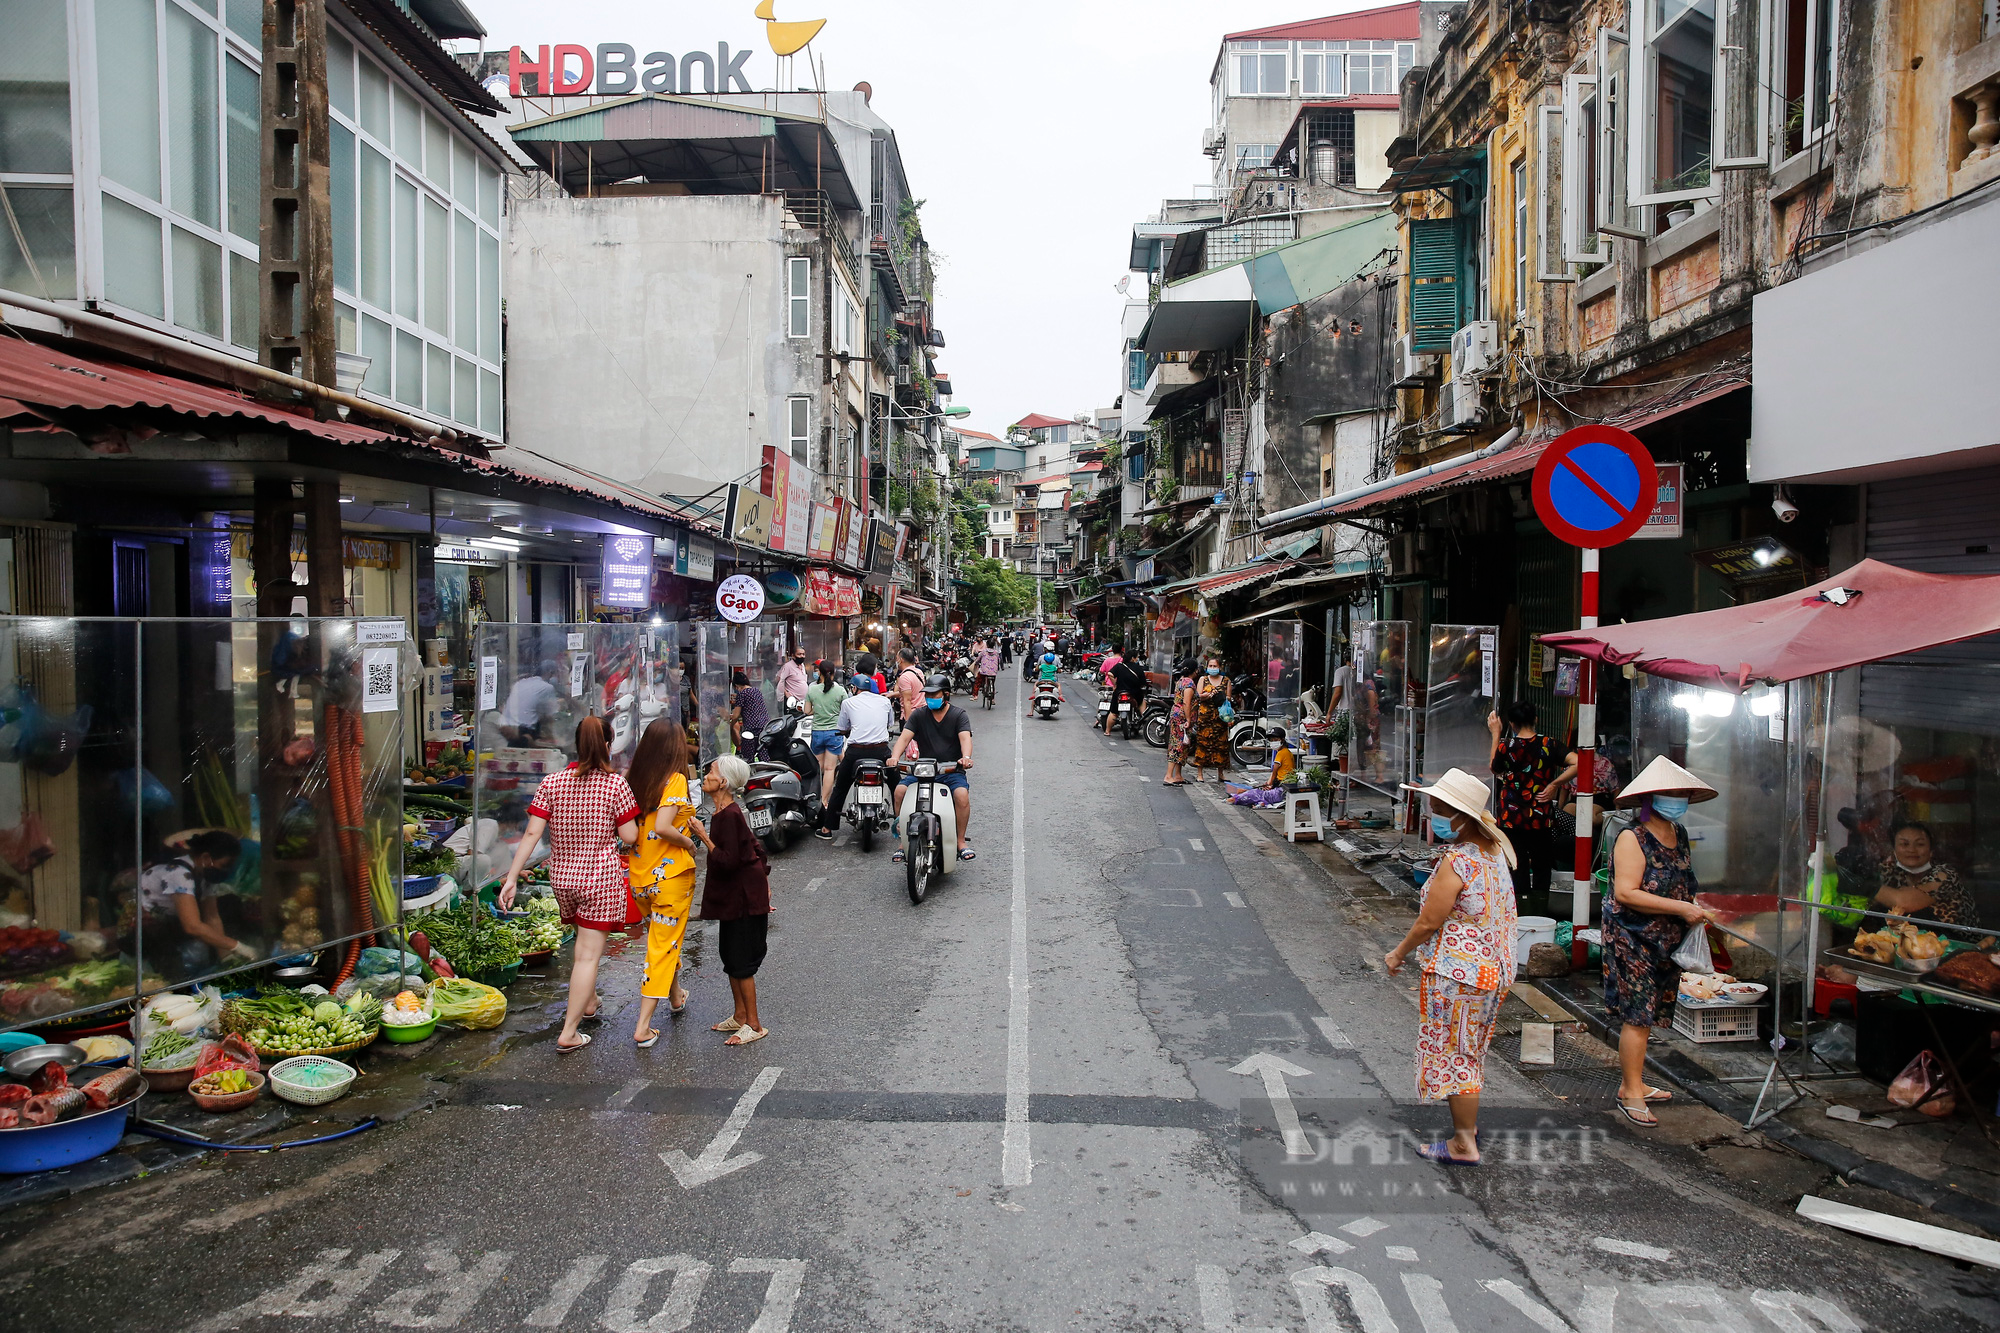 Hà Nội: Chợ dân sinh phố cổ siết chặt các biện pháp phòng, chống dịch Covid-19 - Ảnh 1.